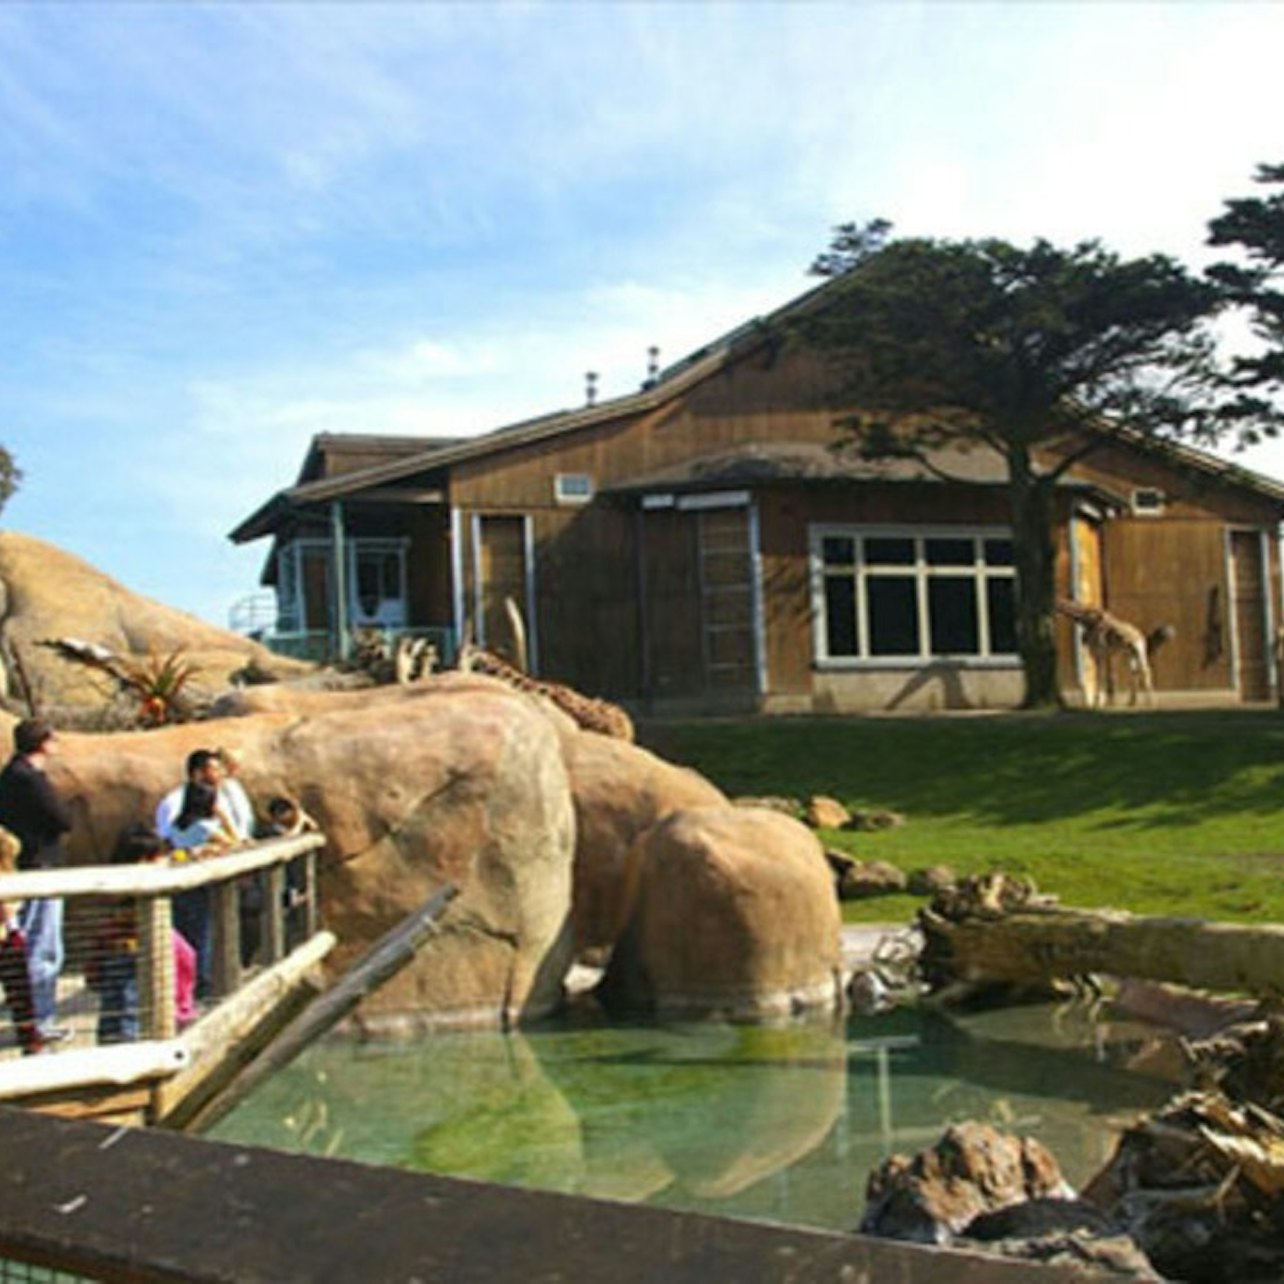 Zoo de San Francisco: Entrada - Alojamientos en San Francisco